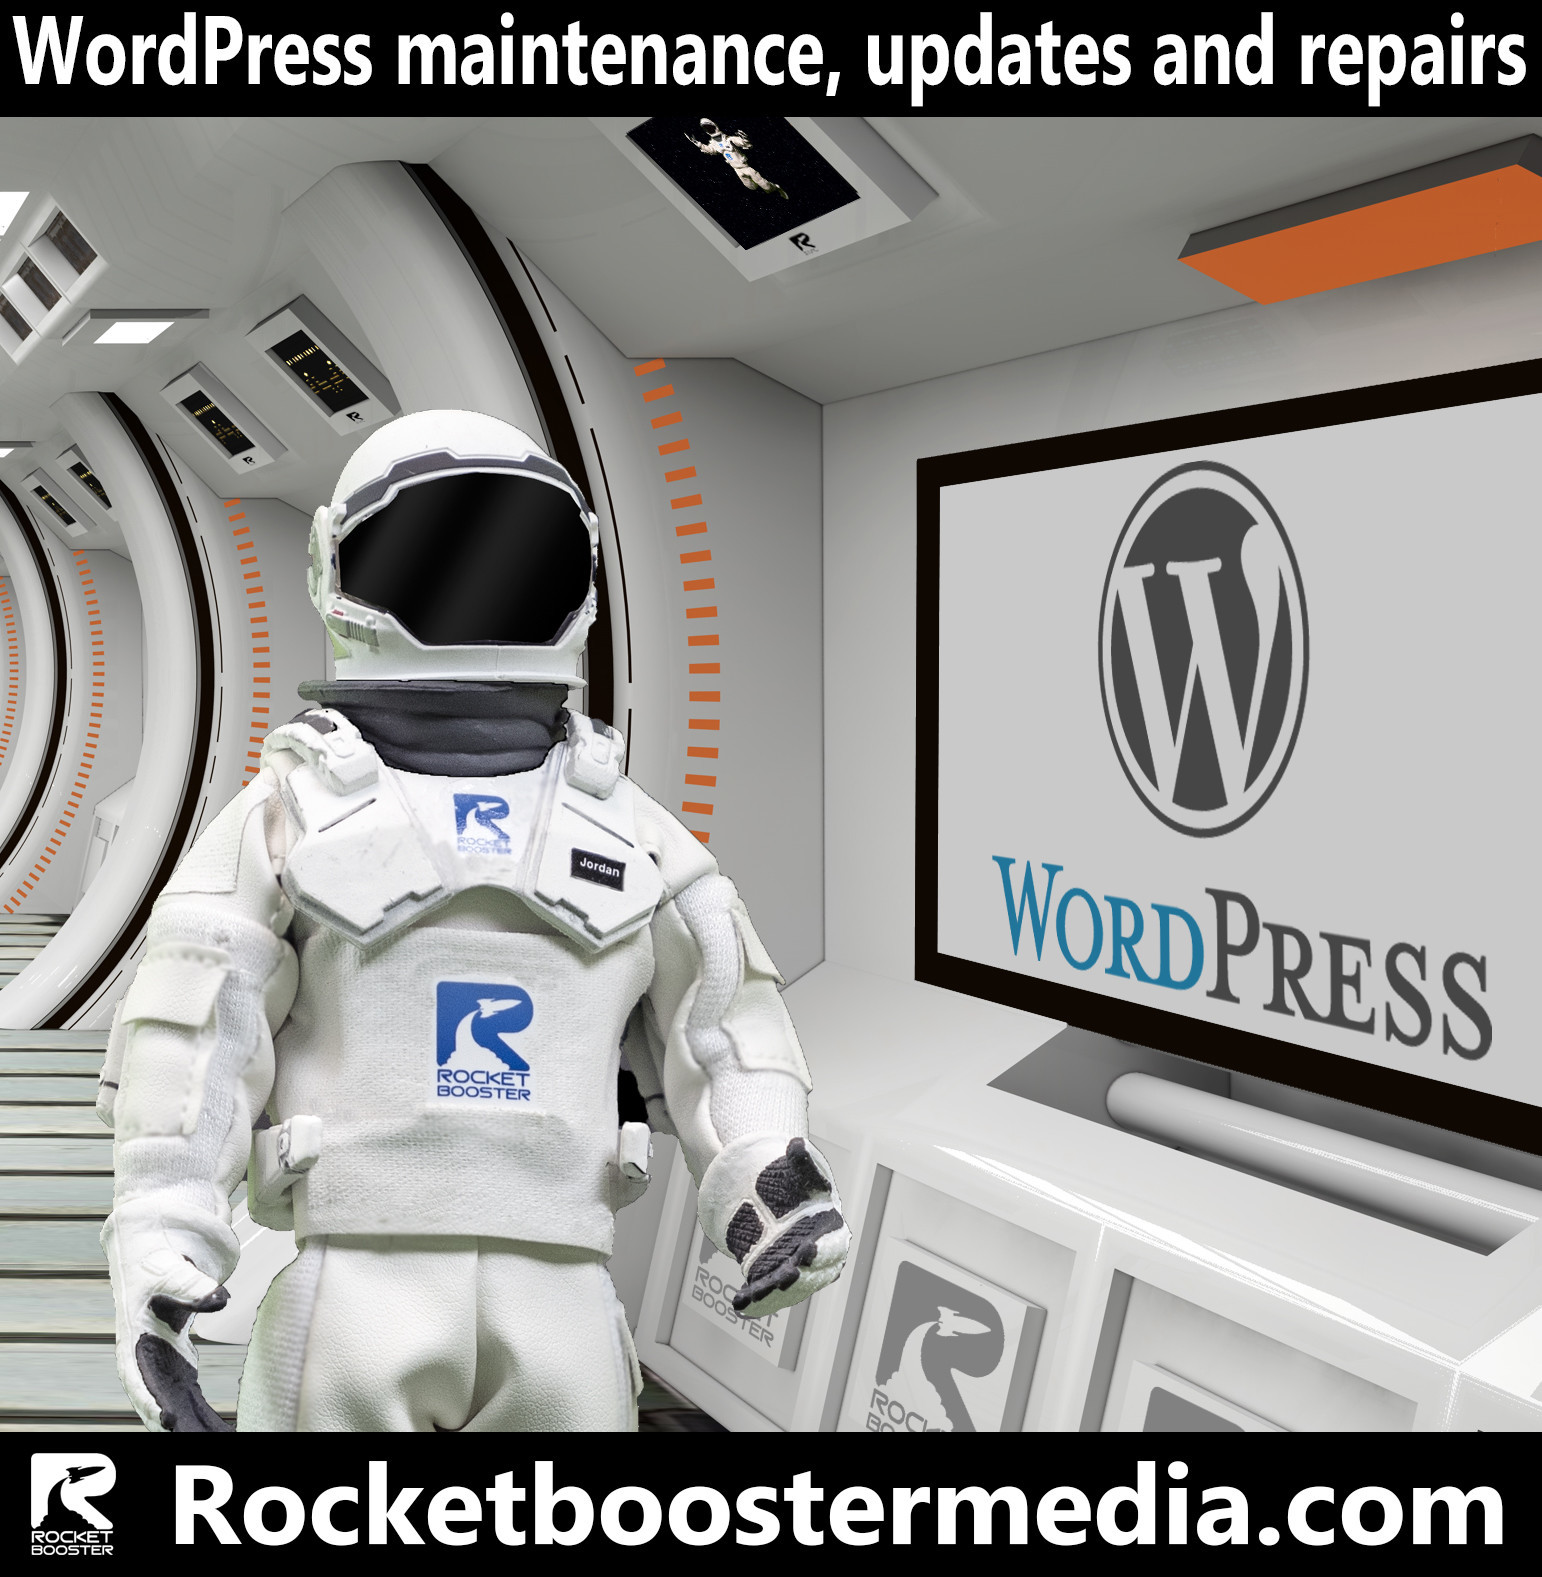 WordPress maintenance, updates and repairs